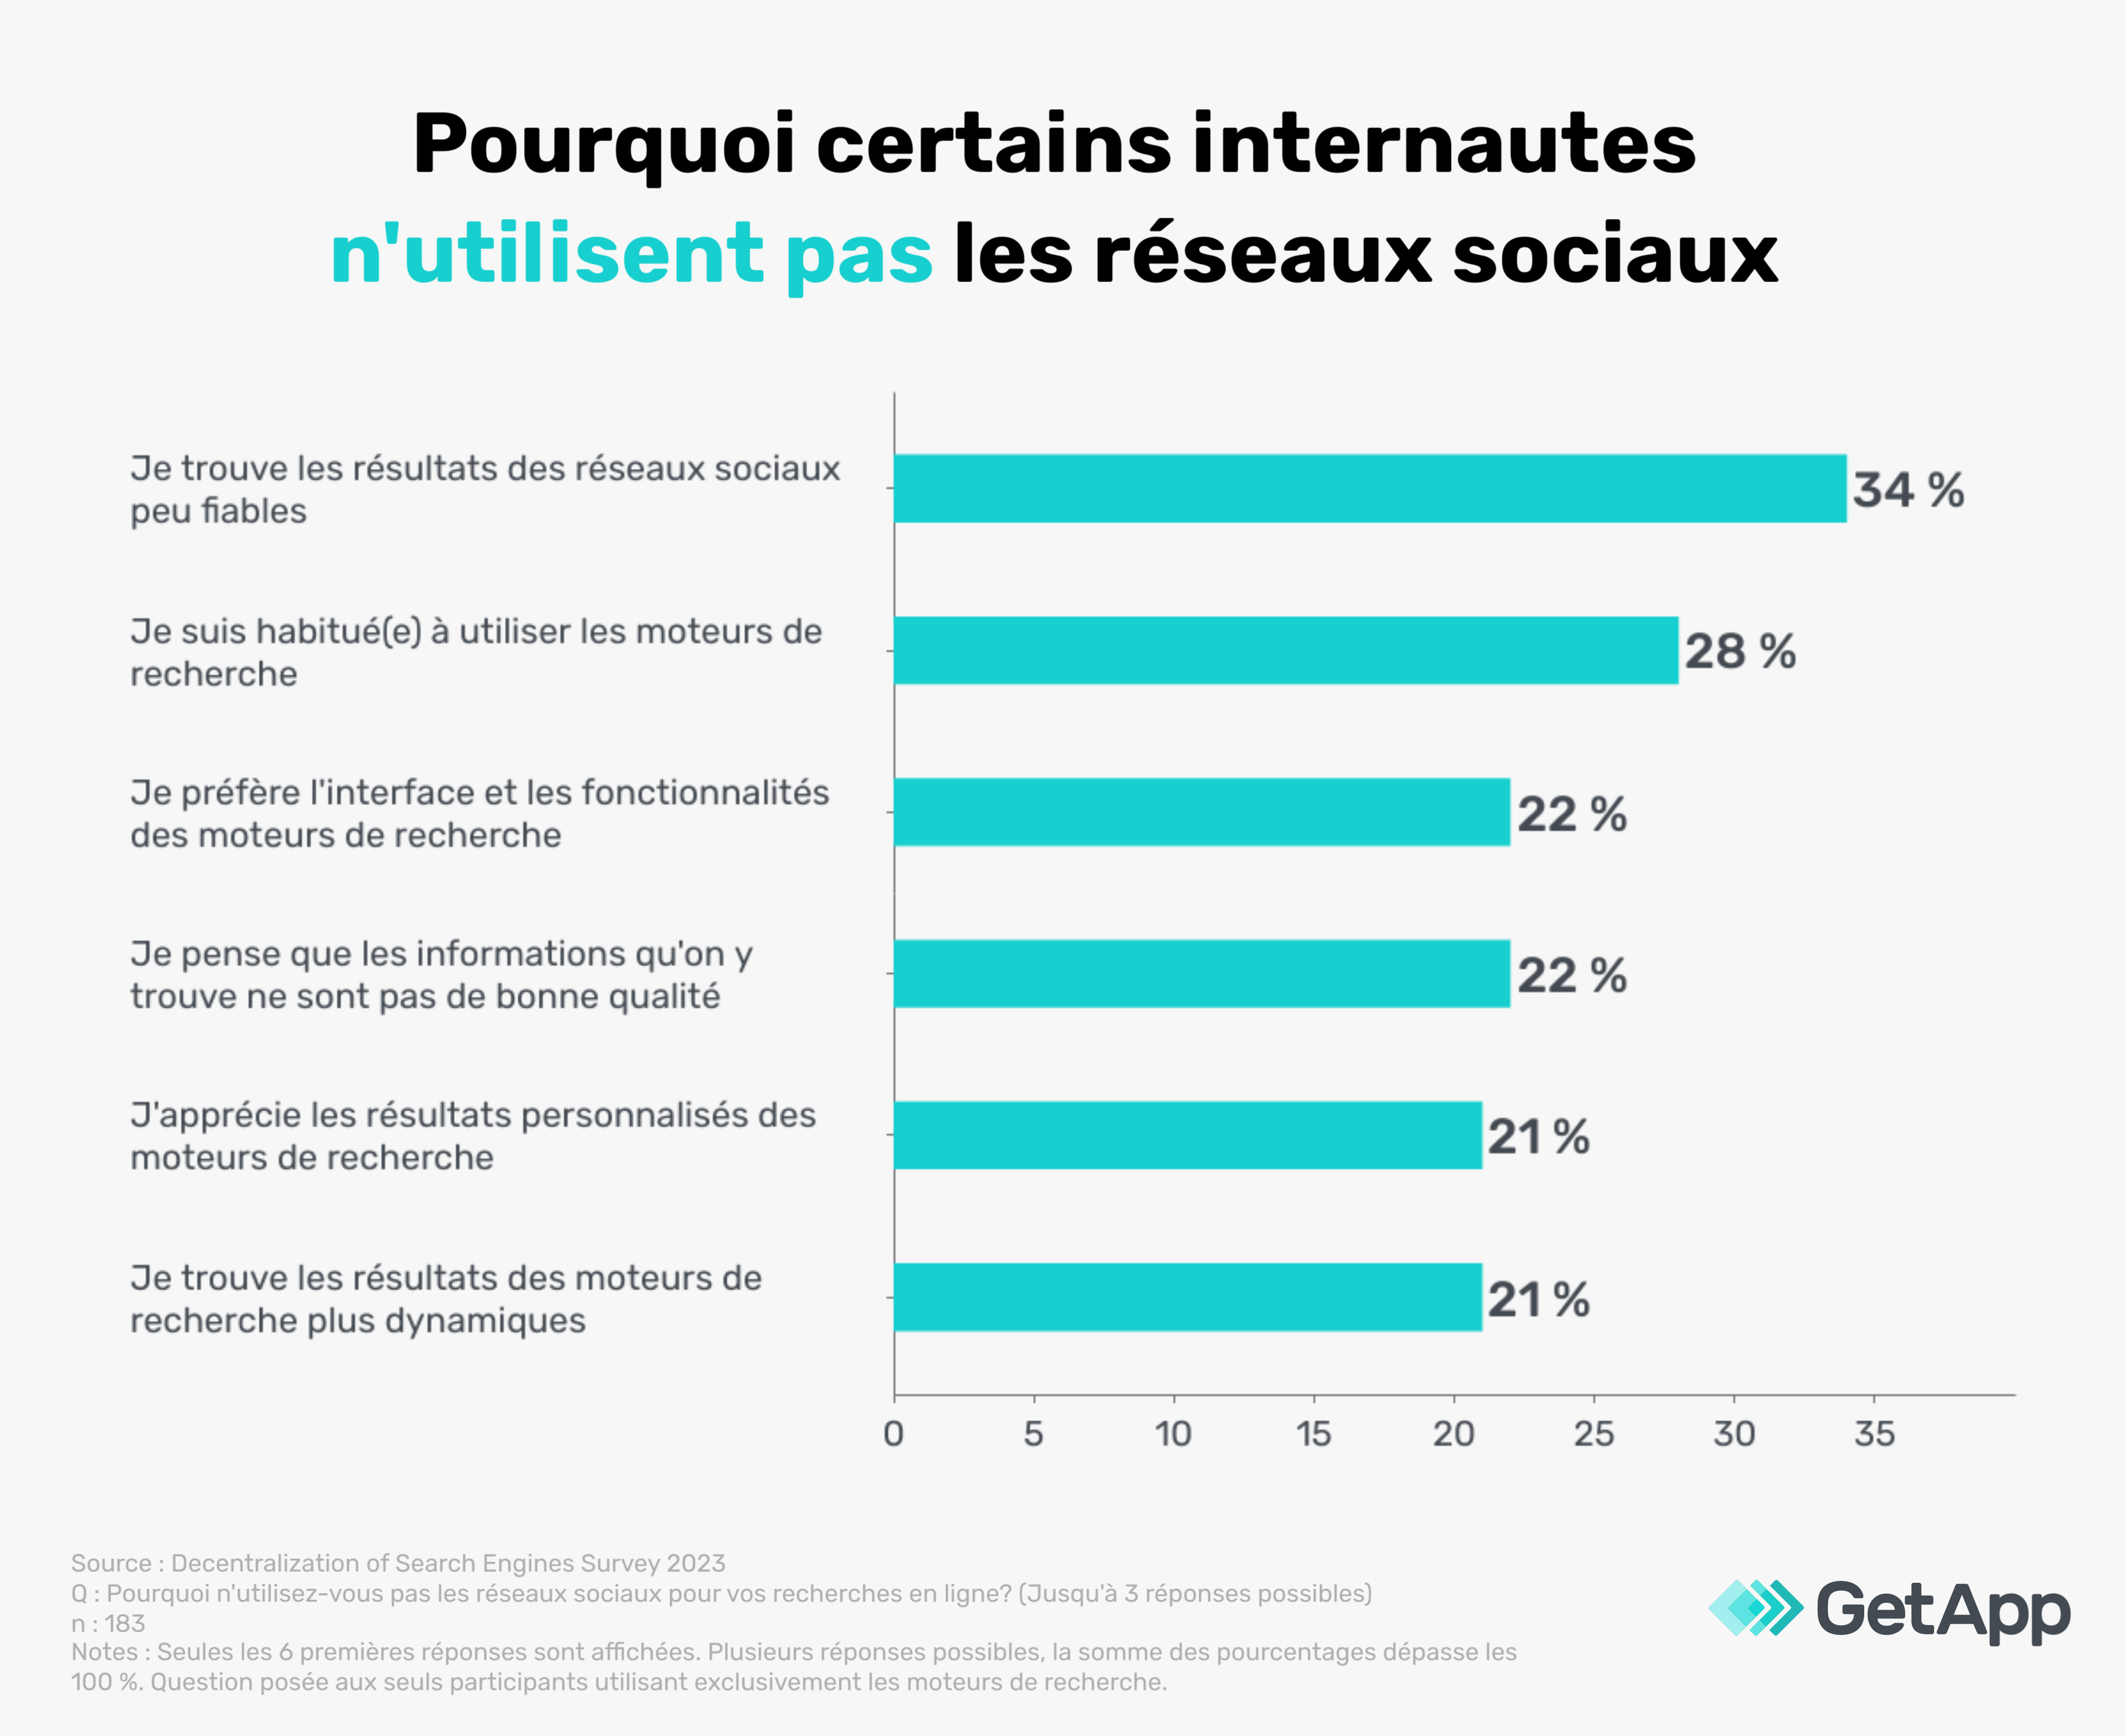 Raisons pour lesquelles les utilisateurs québécois évitent d'effectuer leurs recherches sur les réseaux sociaux